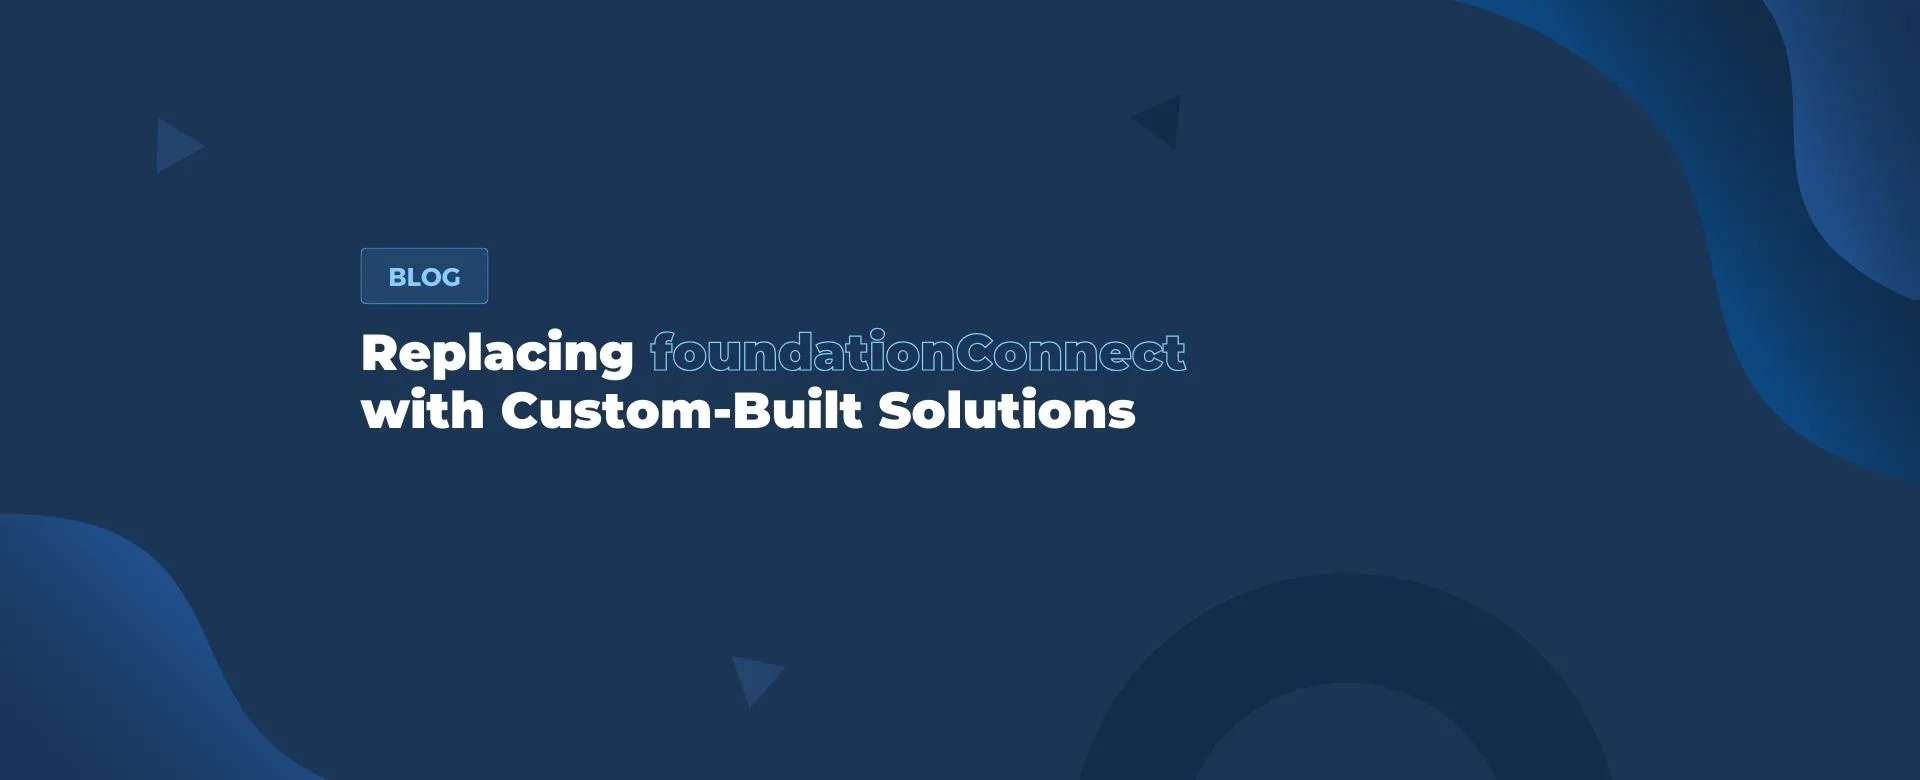 Custom-Built Solutions